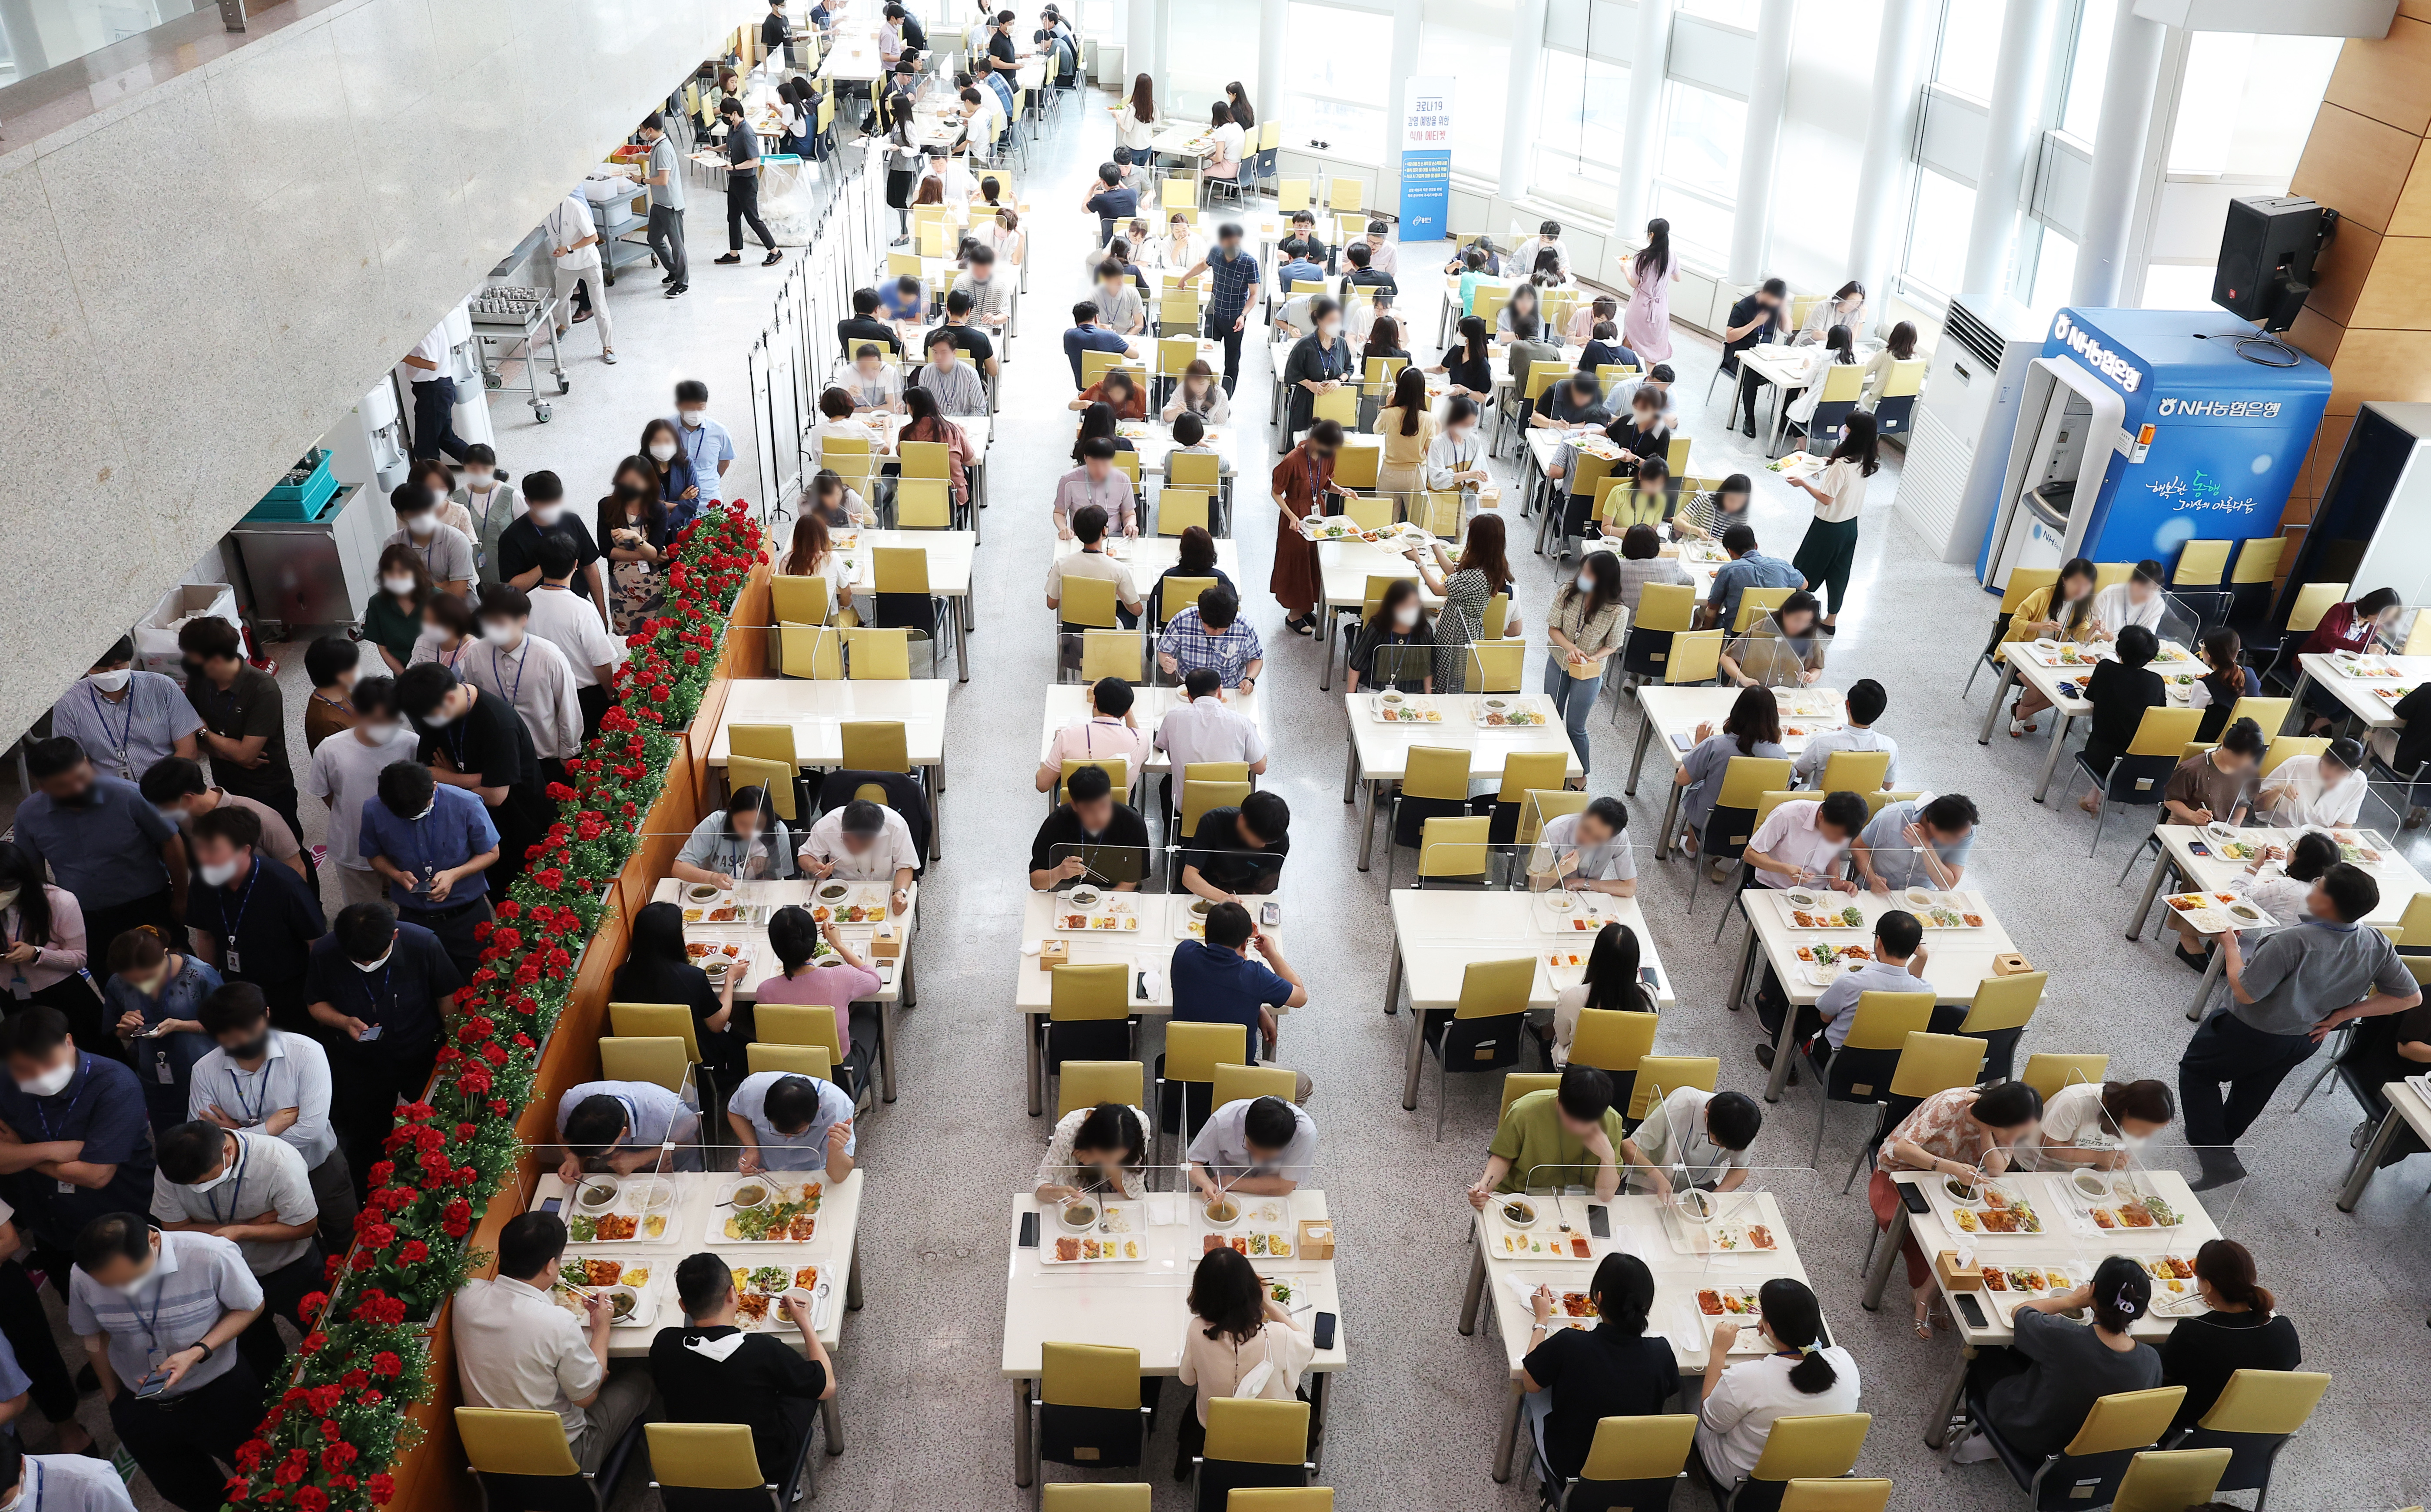 경기도 용인시청 구내식당이 붐비고 있는 모습. 최근 젊은 직장인들 사이에서는 점심 값을 절약하기 위해 인근 관공서 구내식당을 이용하는 경우가 있다. (사진 출처=연합뉴스)